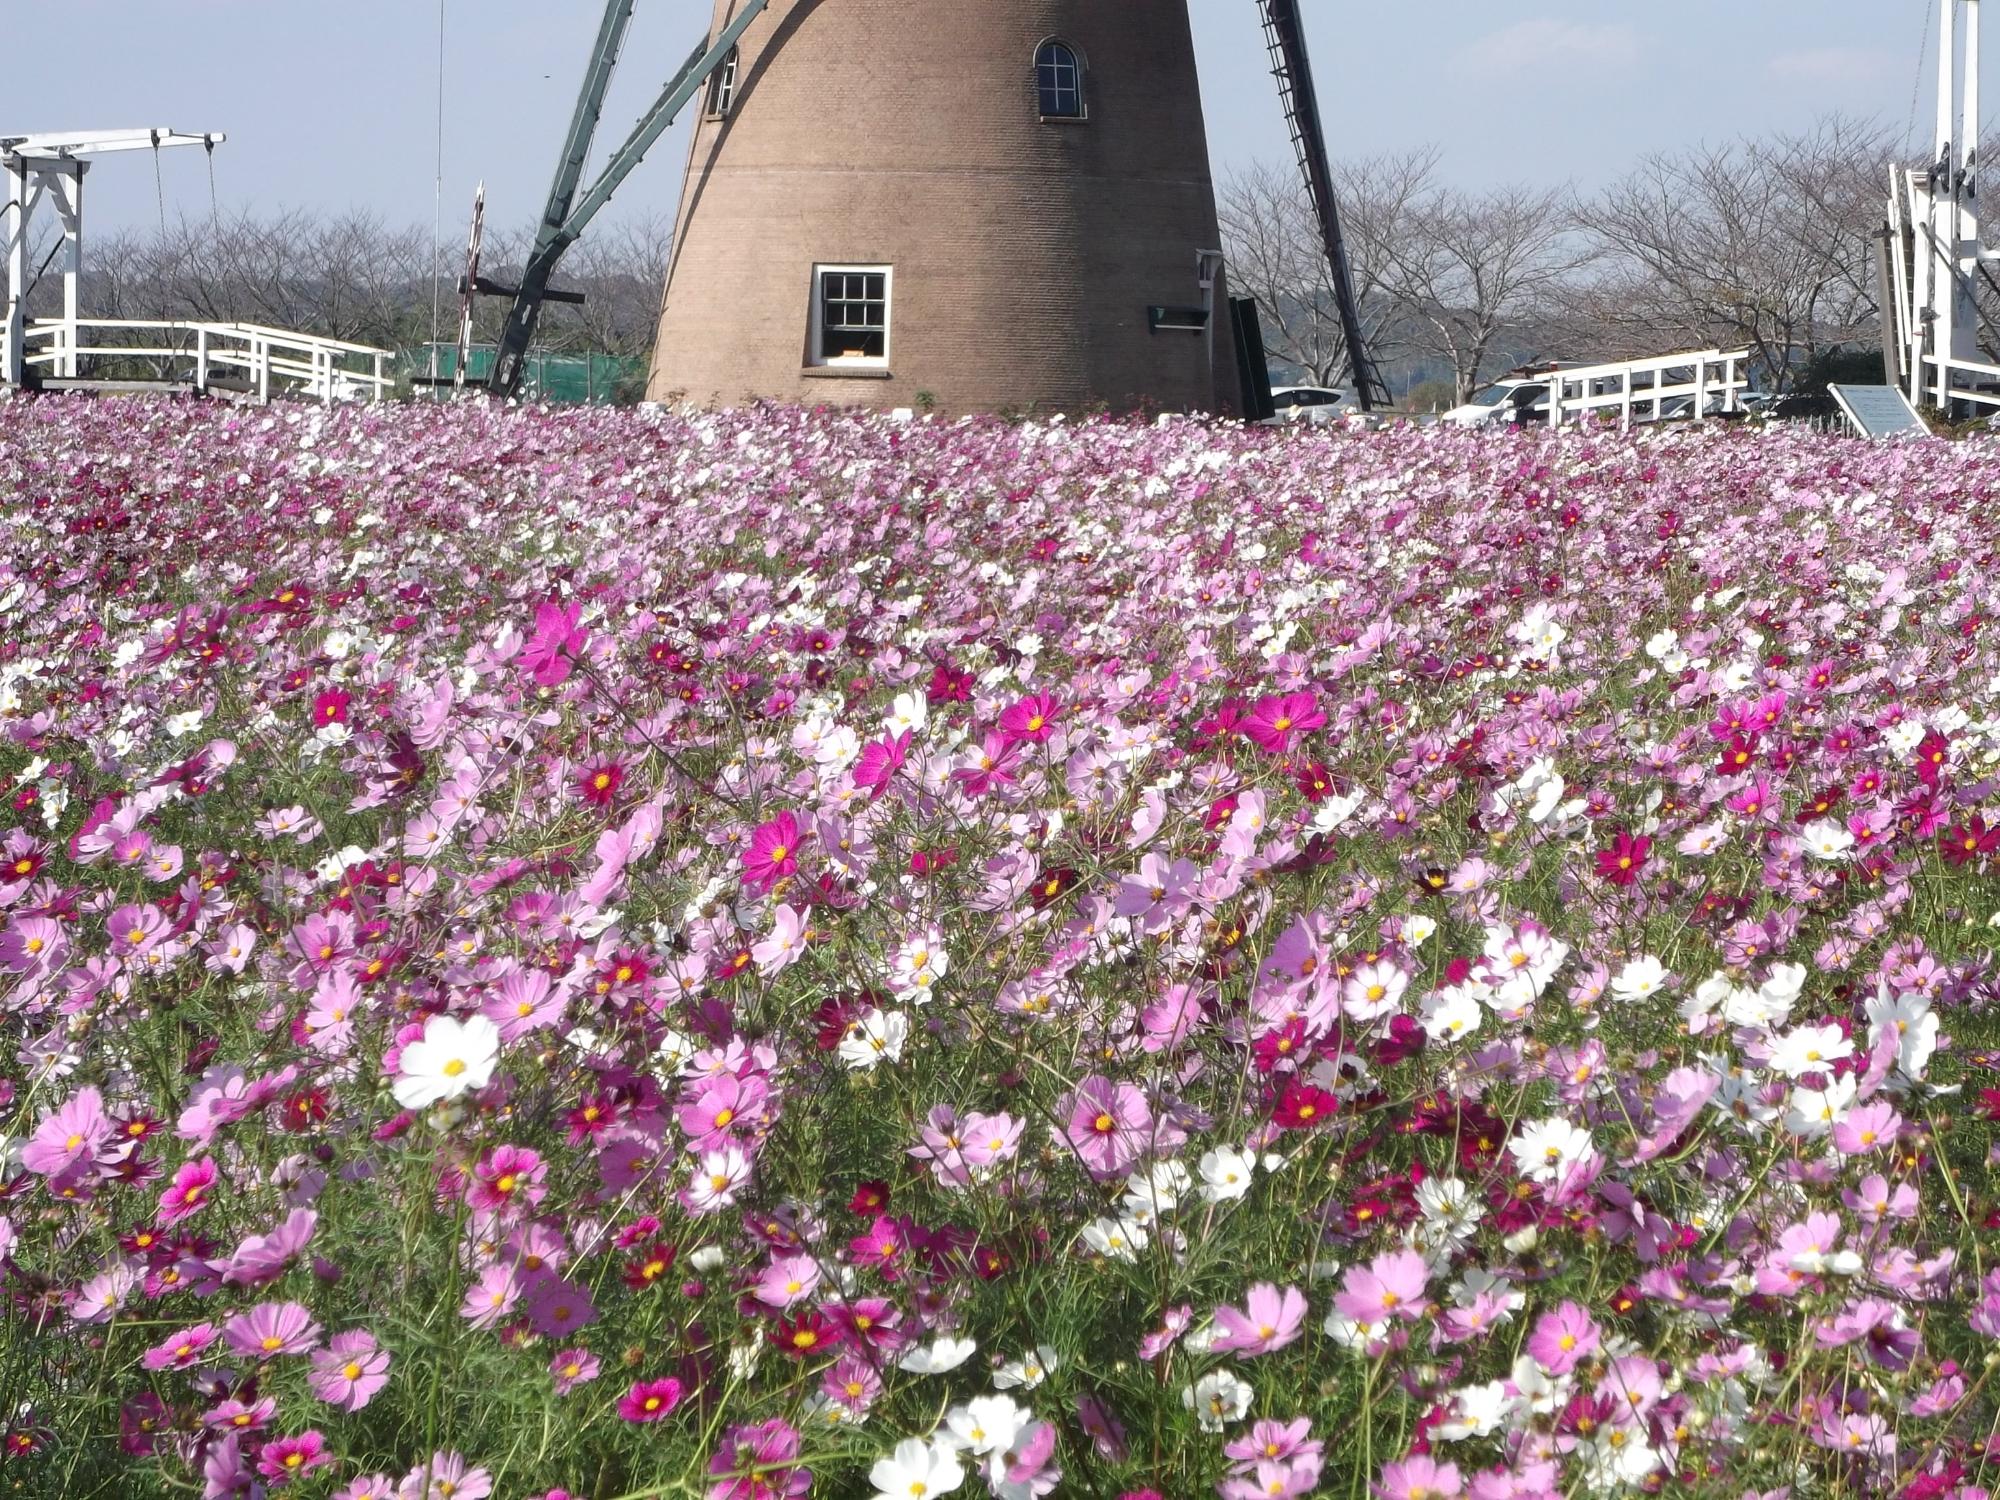 風車の周りに沢山の白やピンク色のコスモスの花が咲いているふるさと広場の写真